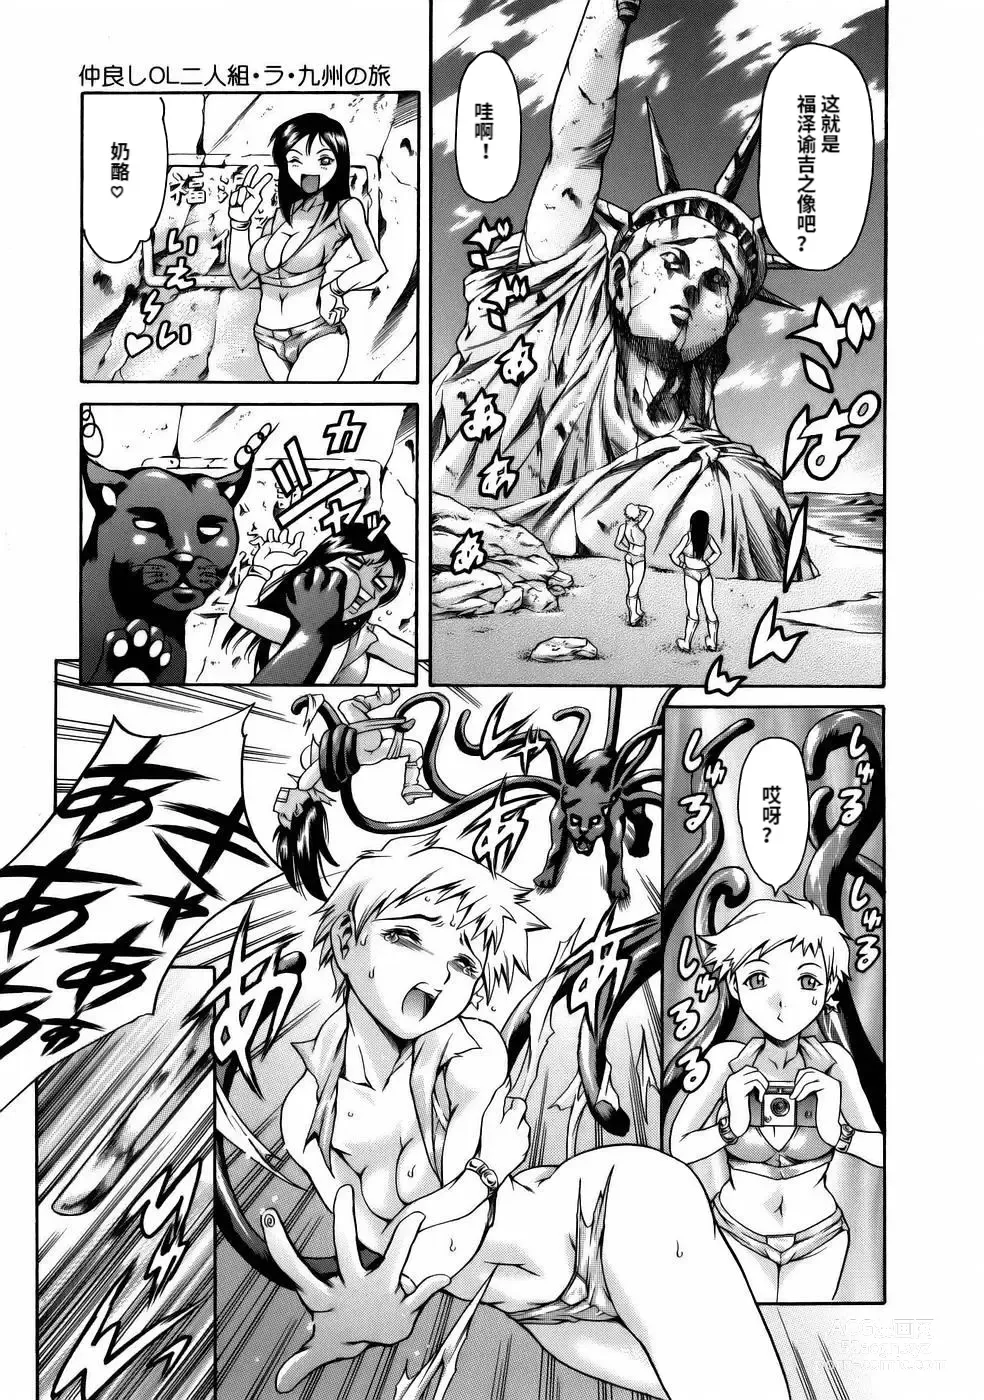 Page 185 of manga Manga Naze Nani Kyoushitsu